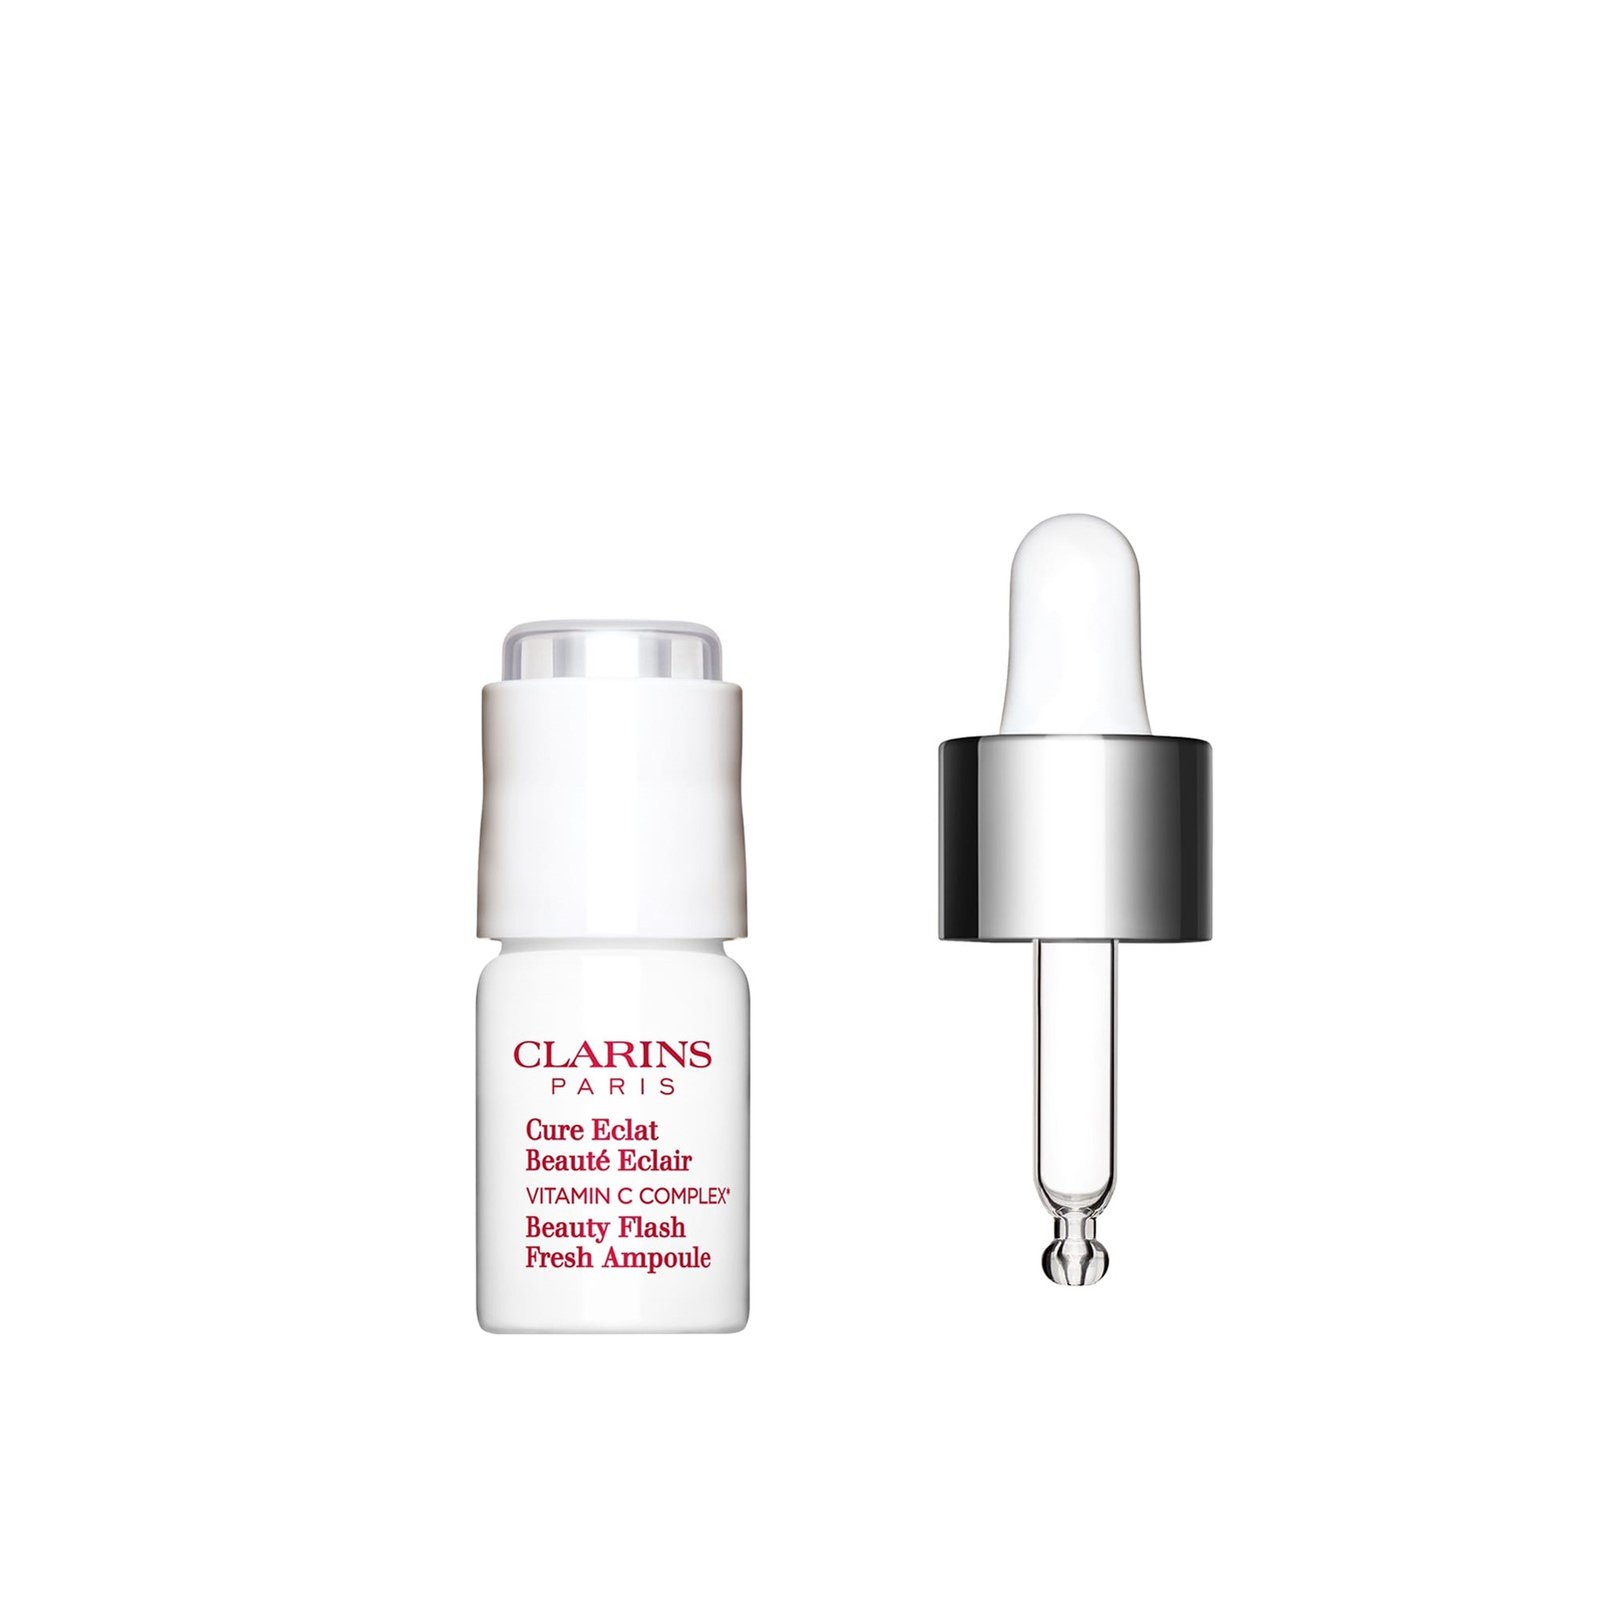 Clarins Beauty Flash Fresh Ampoule 8ml (0.2 fl oz)